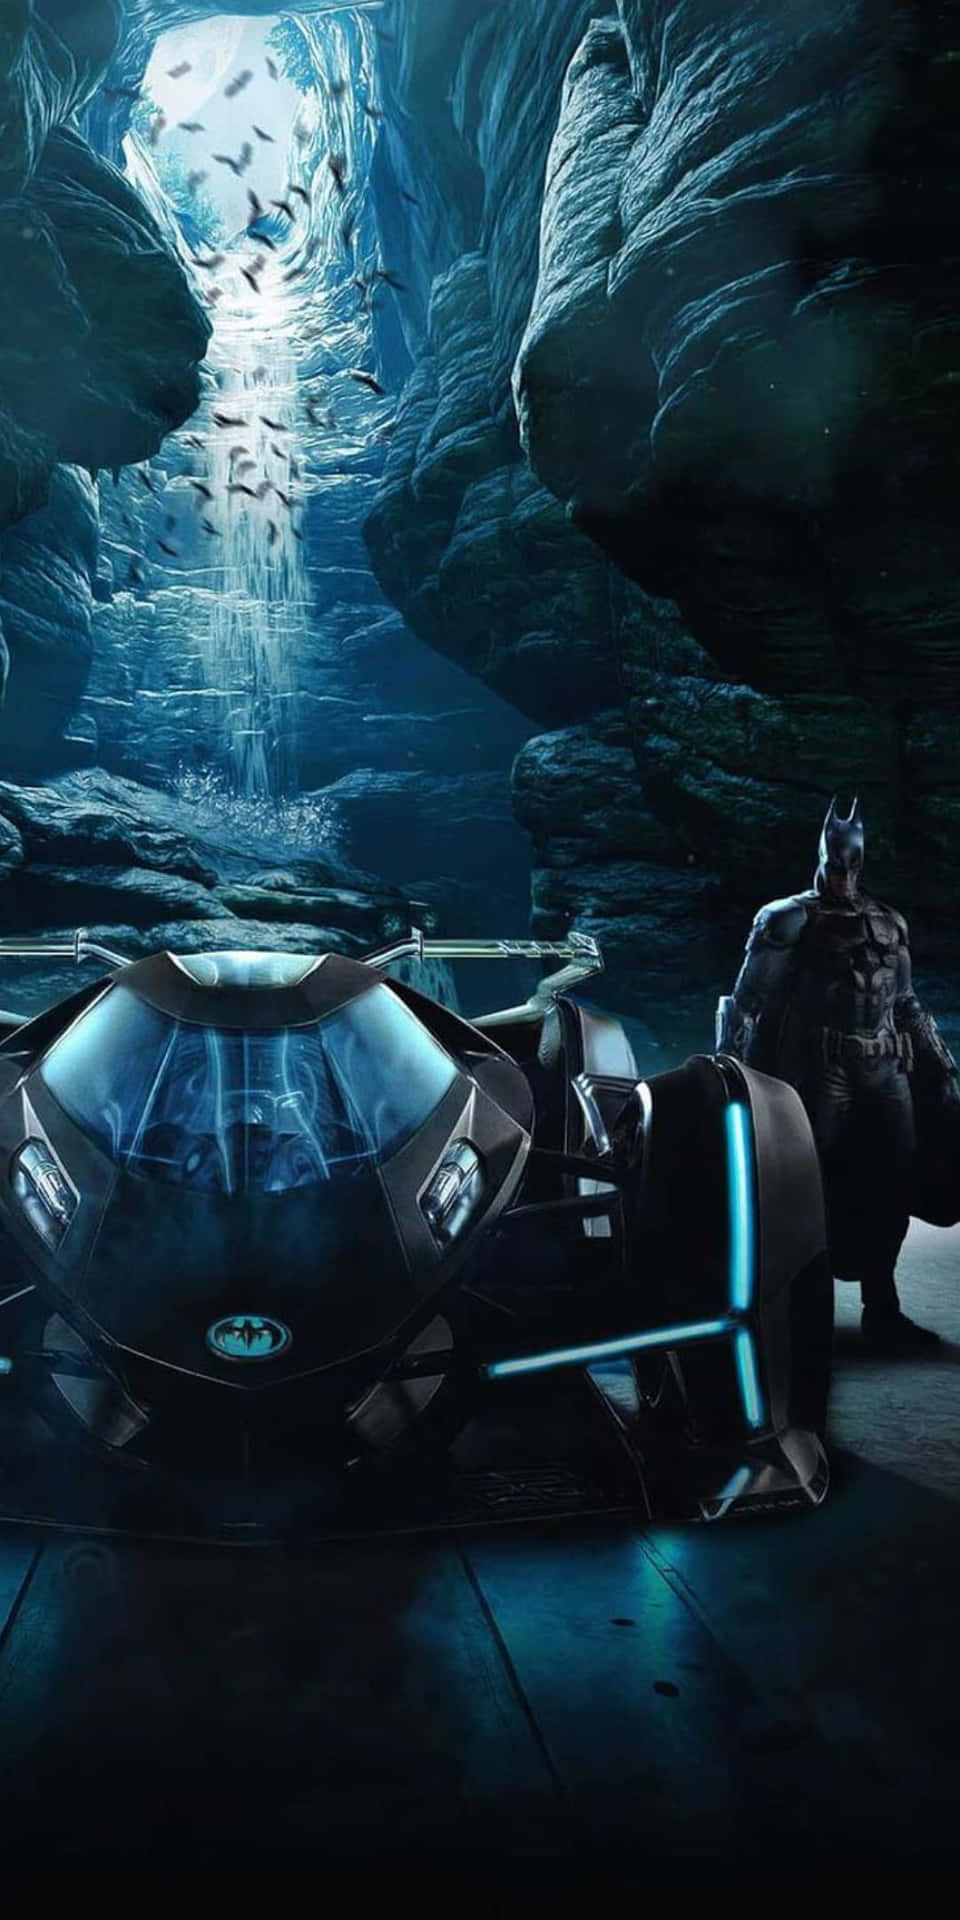 Upplevspänningen I Batmans Berömda Batmobile Under Pixel 3:s Fantastiska Lanseringsevenemang.